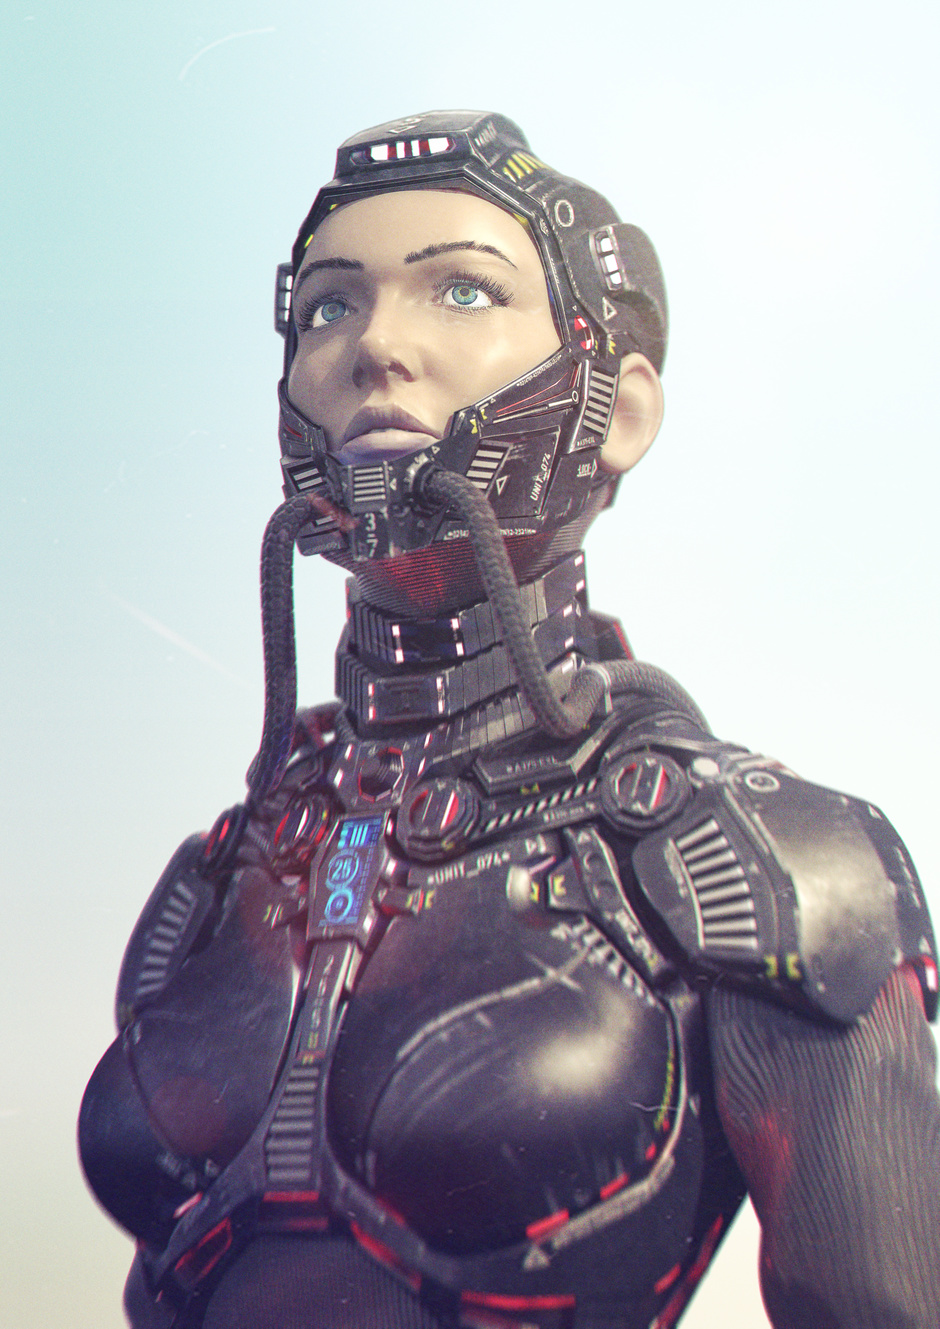 Onward beyond by Jian Han Ng in 2015年2月最新最炫的3D角色设定设计效果欣赏